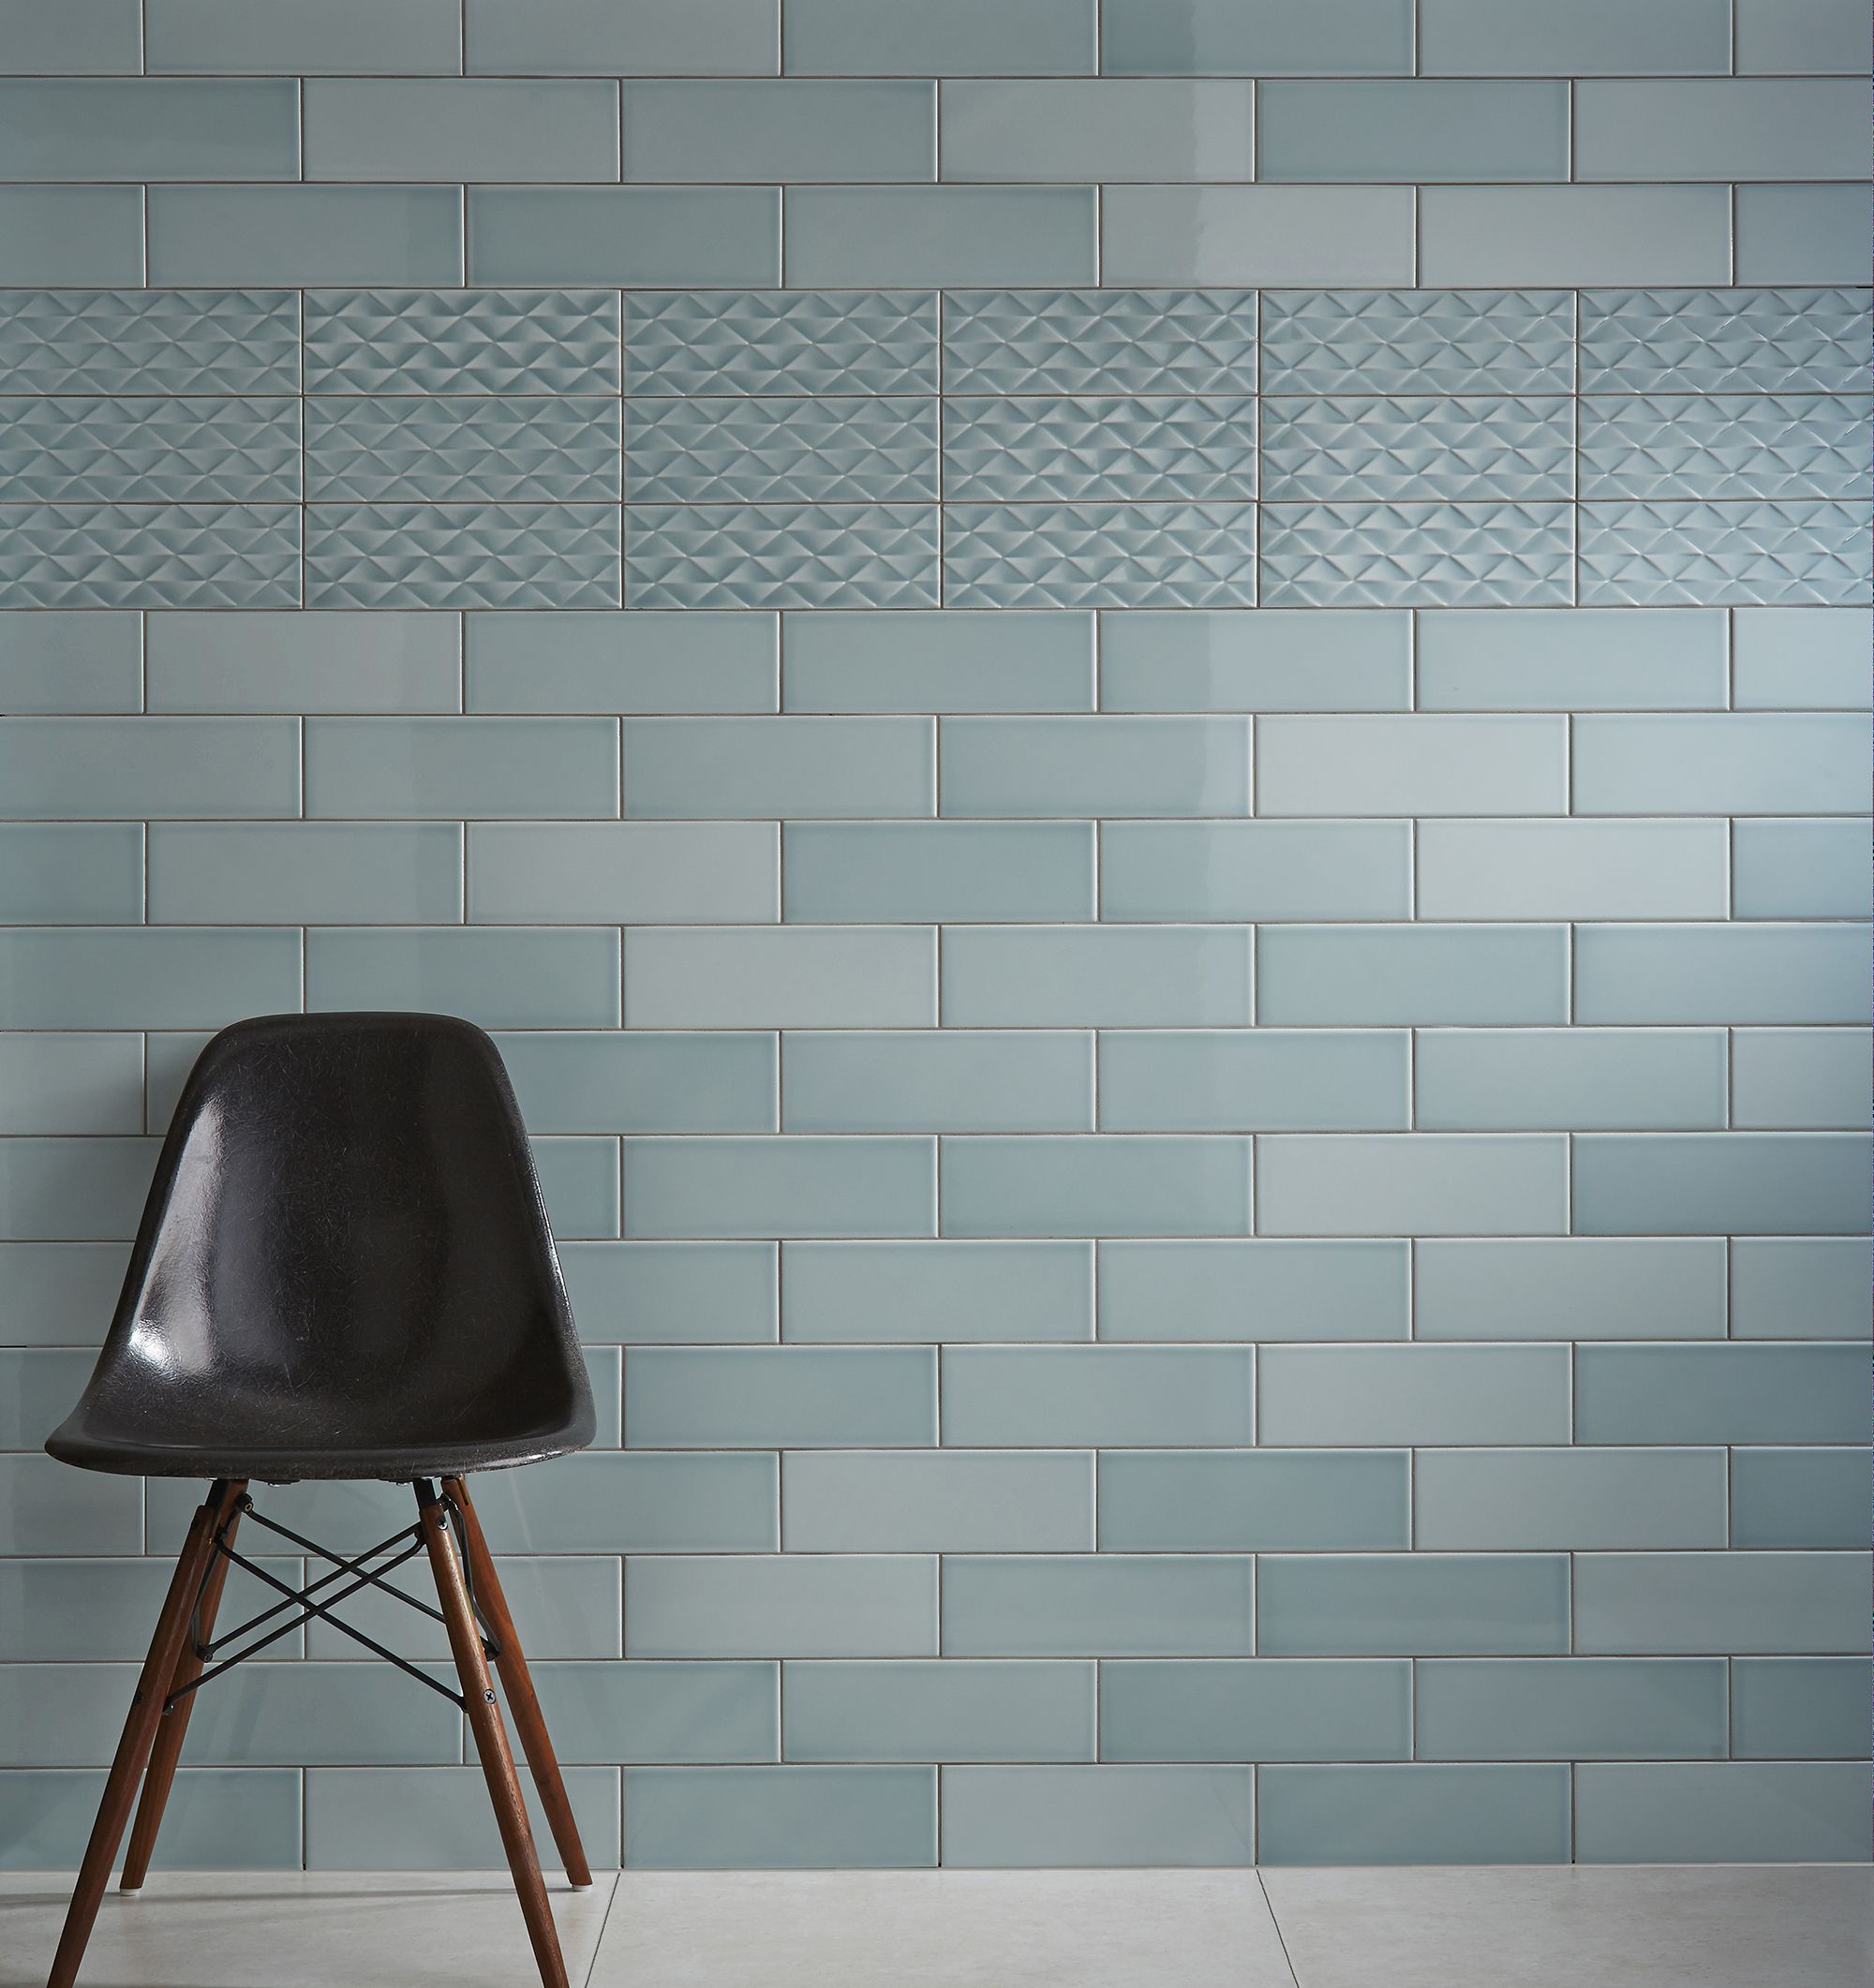 Johnson Tiles Mayfair Green Gloss Ceramic Wall Tile Sample